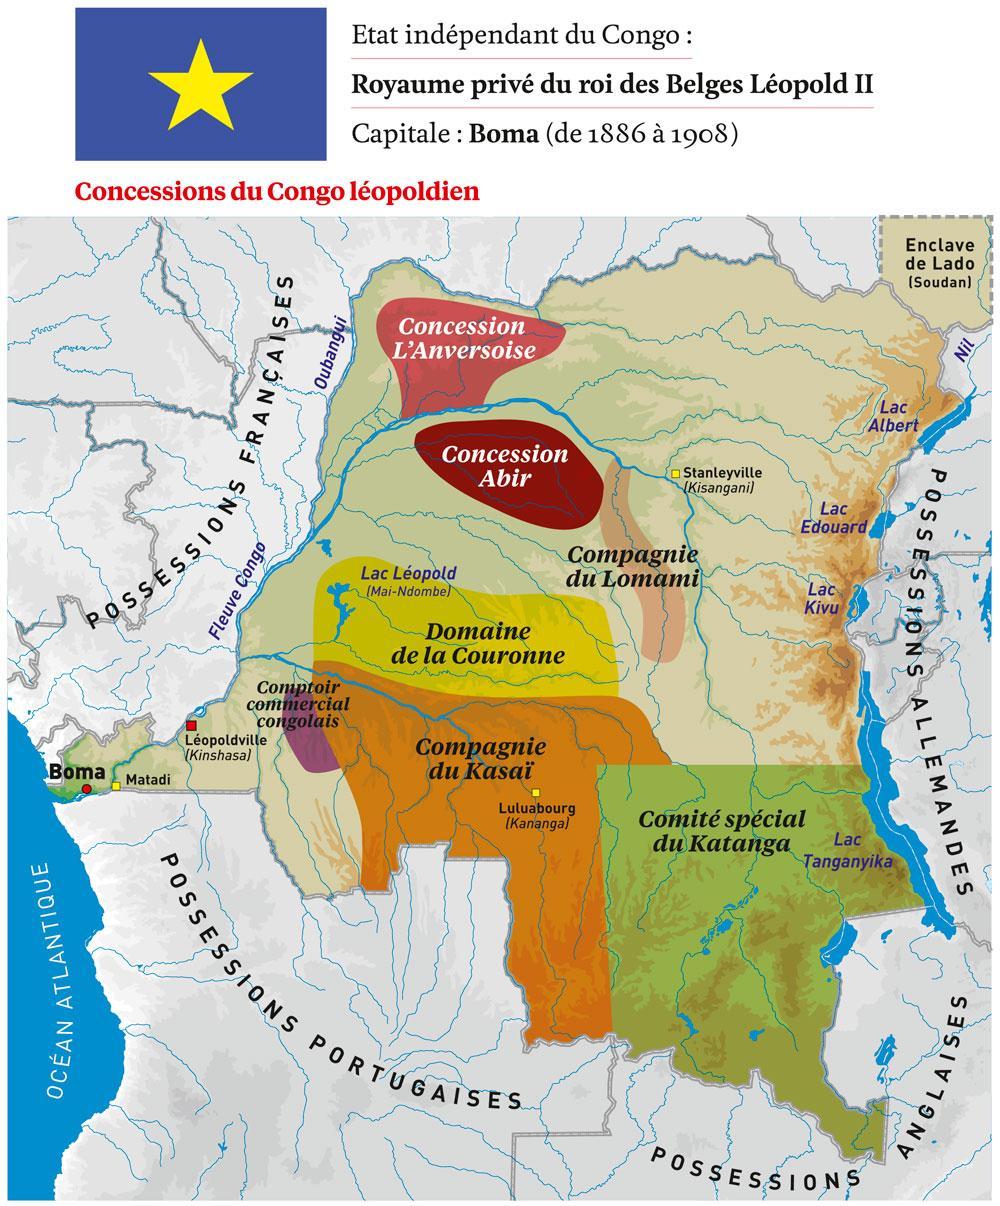 Léopold II et le Congo : acteurs clés et concessions